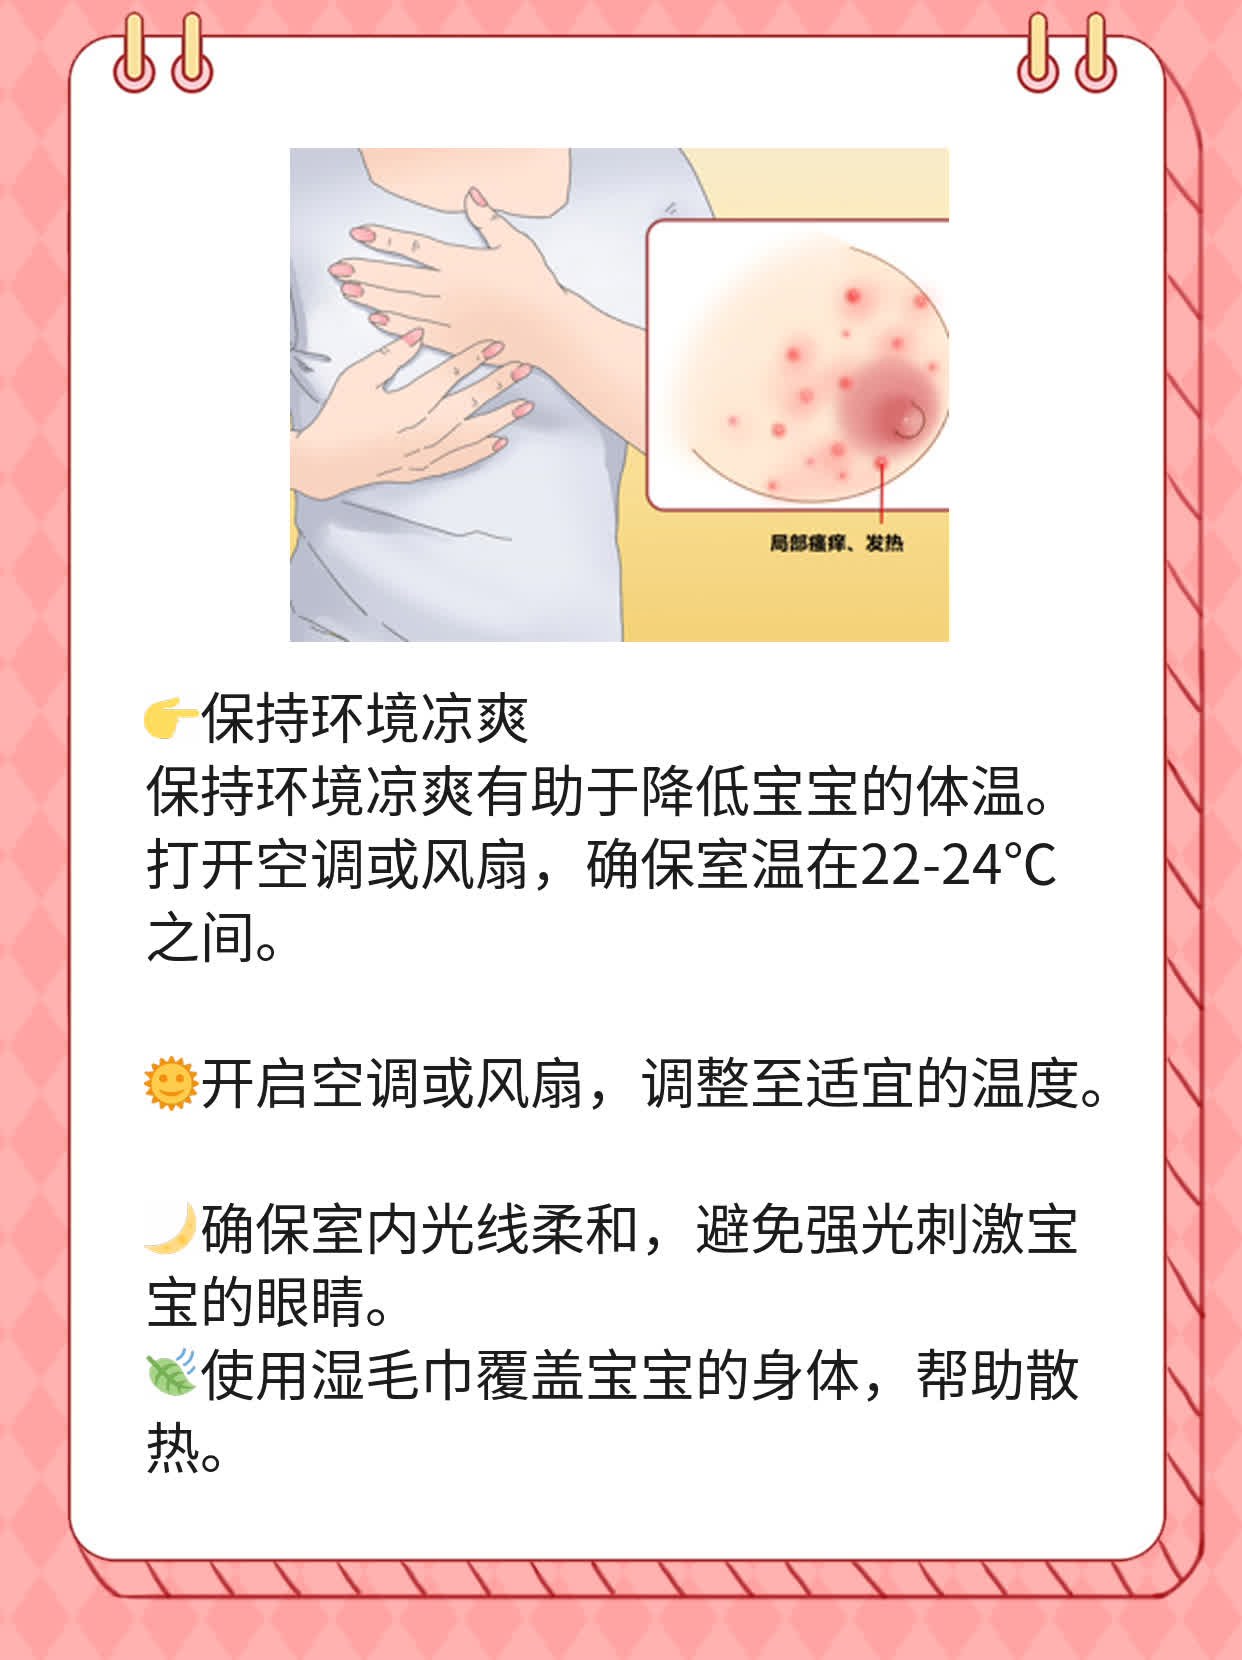 「育儿难题」：宝宝发烧抽搐，如何应对？